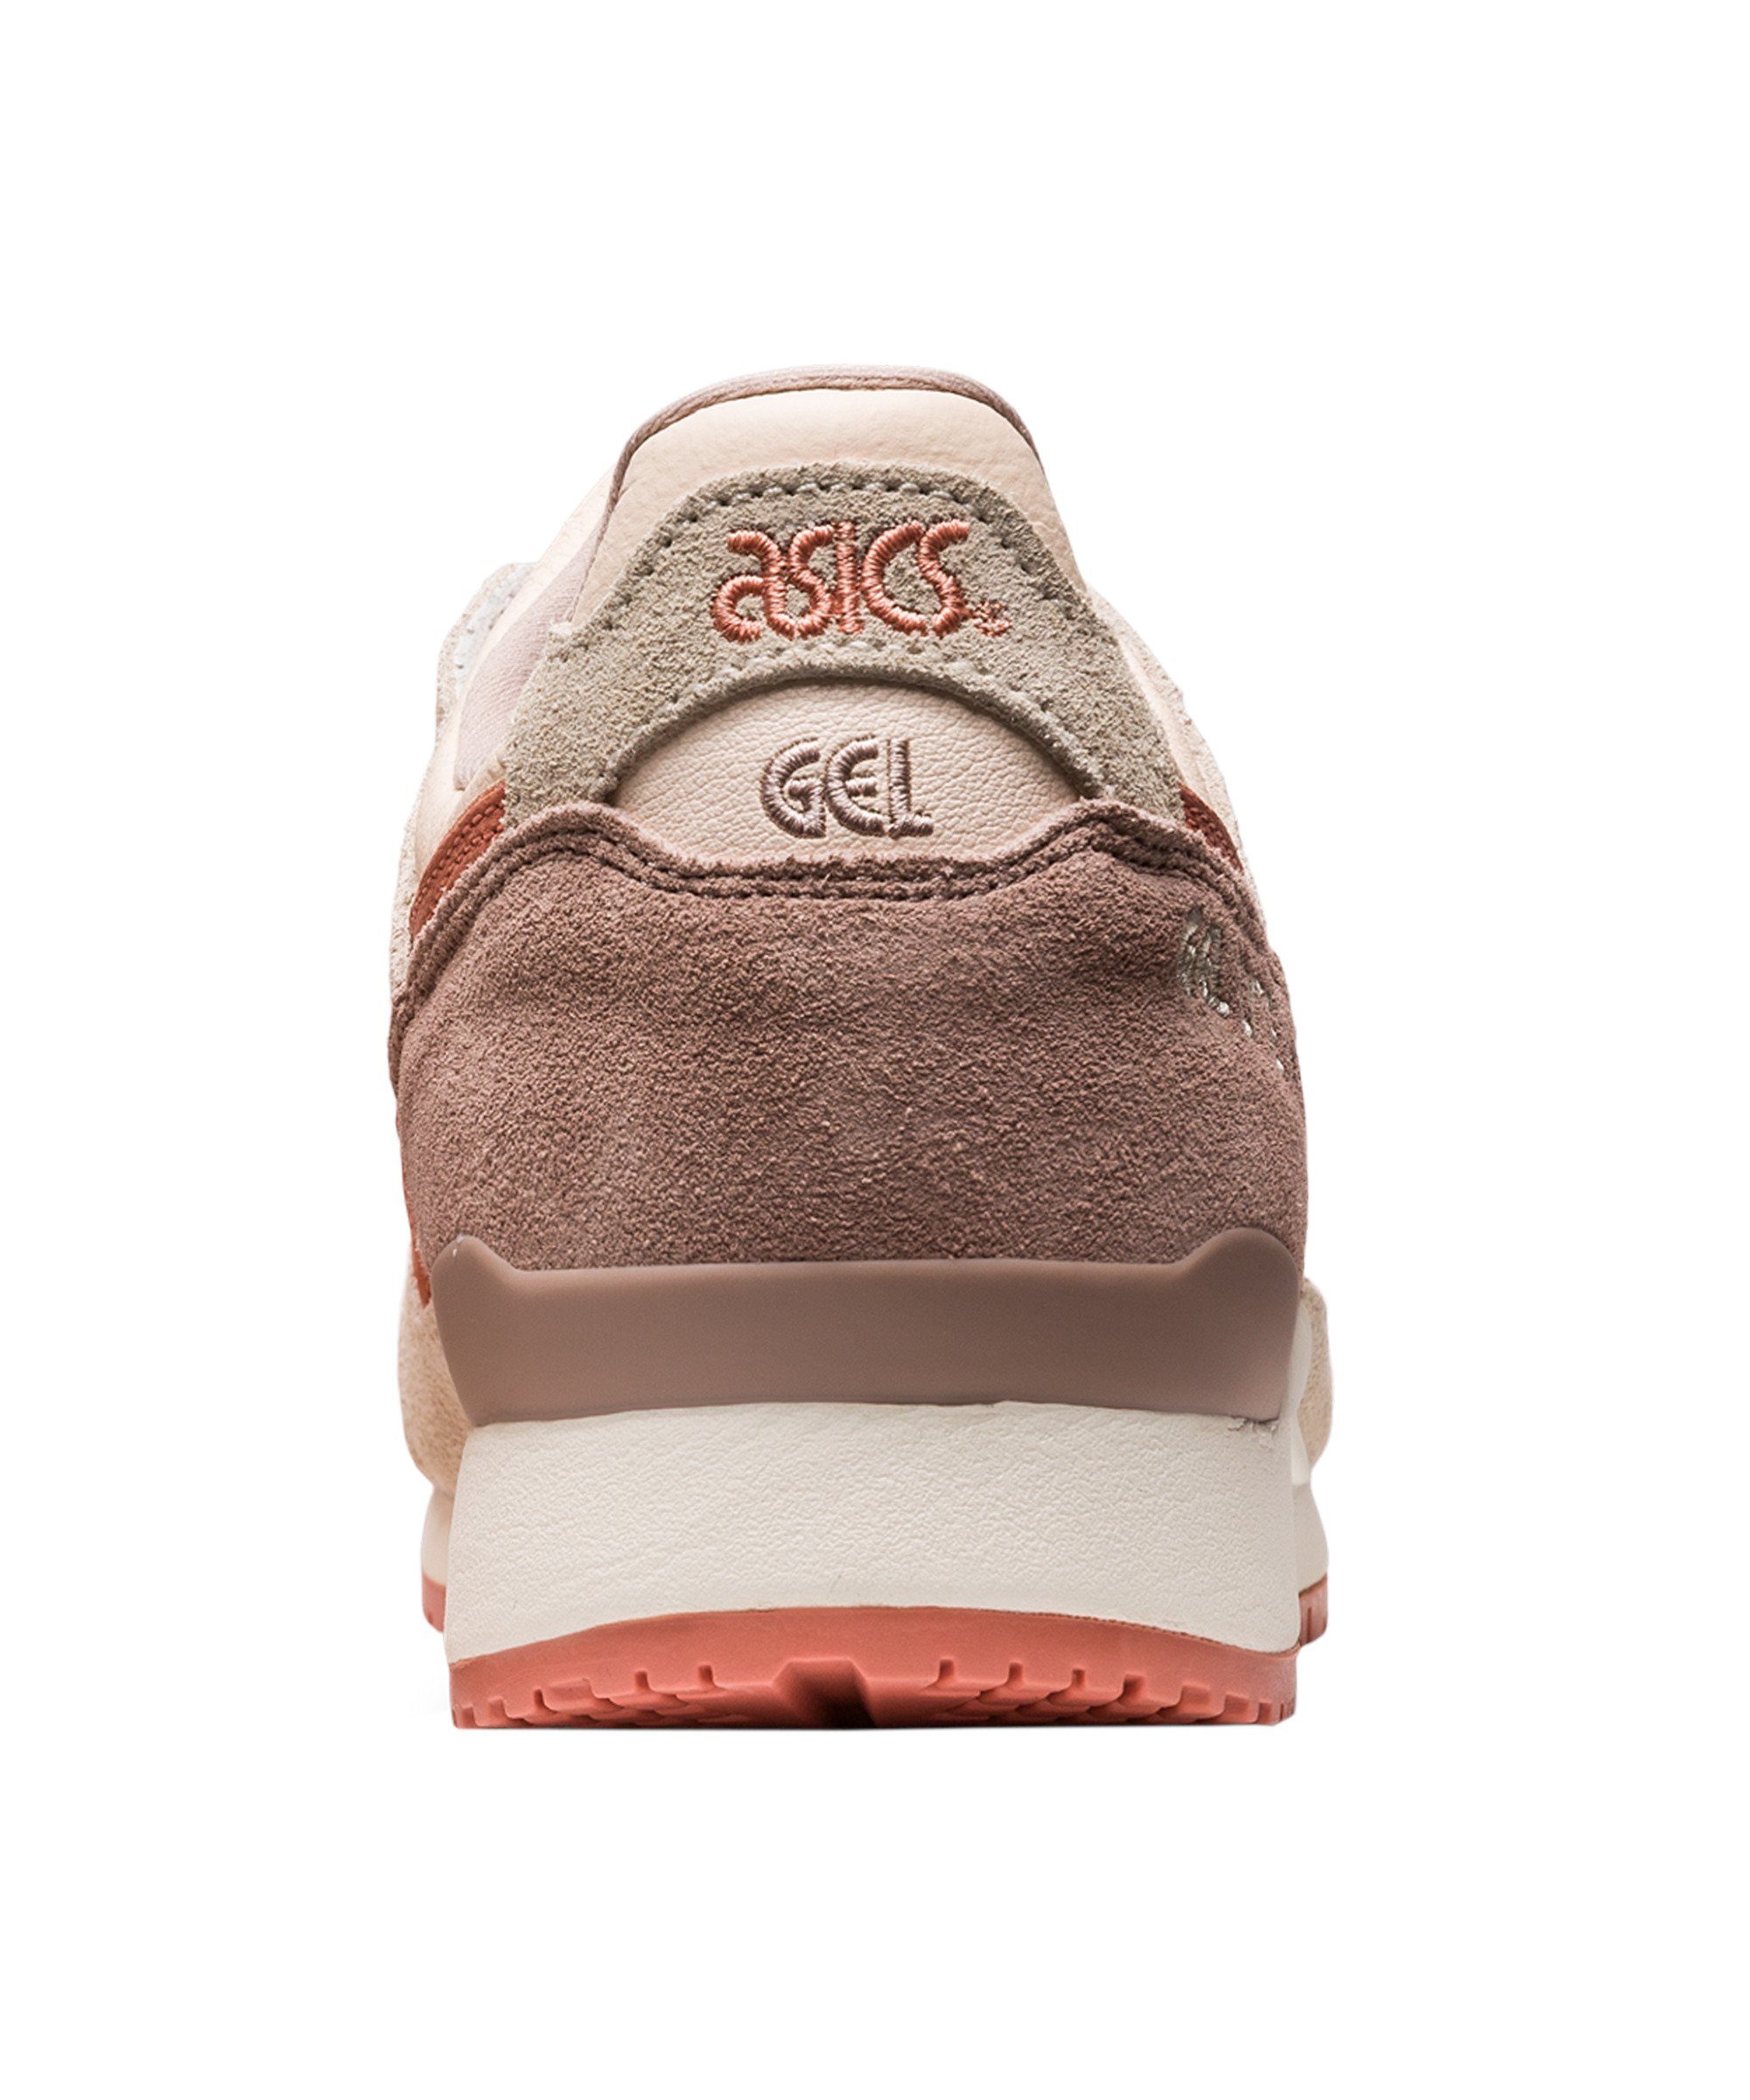 Asics Gel-Lyte III OG rosagrau Beige Sneaker